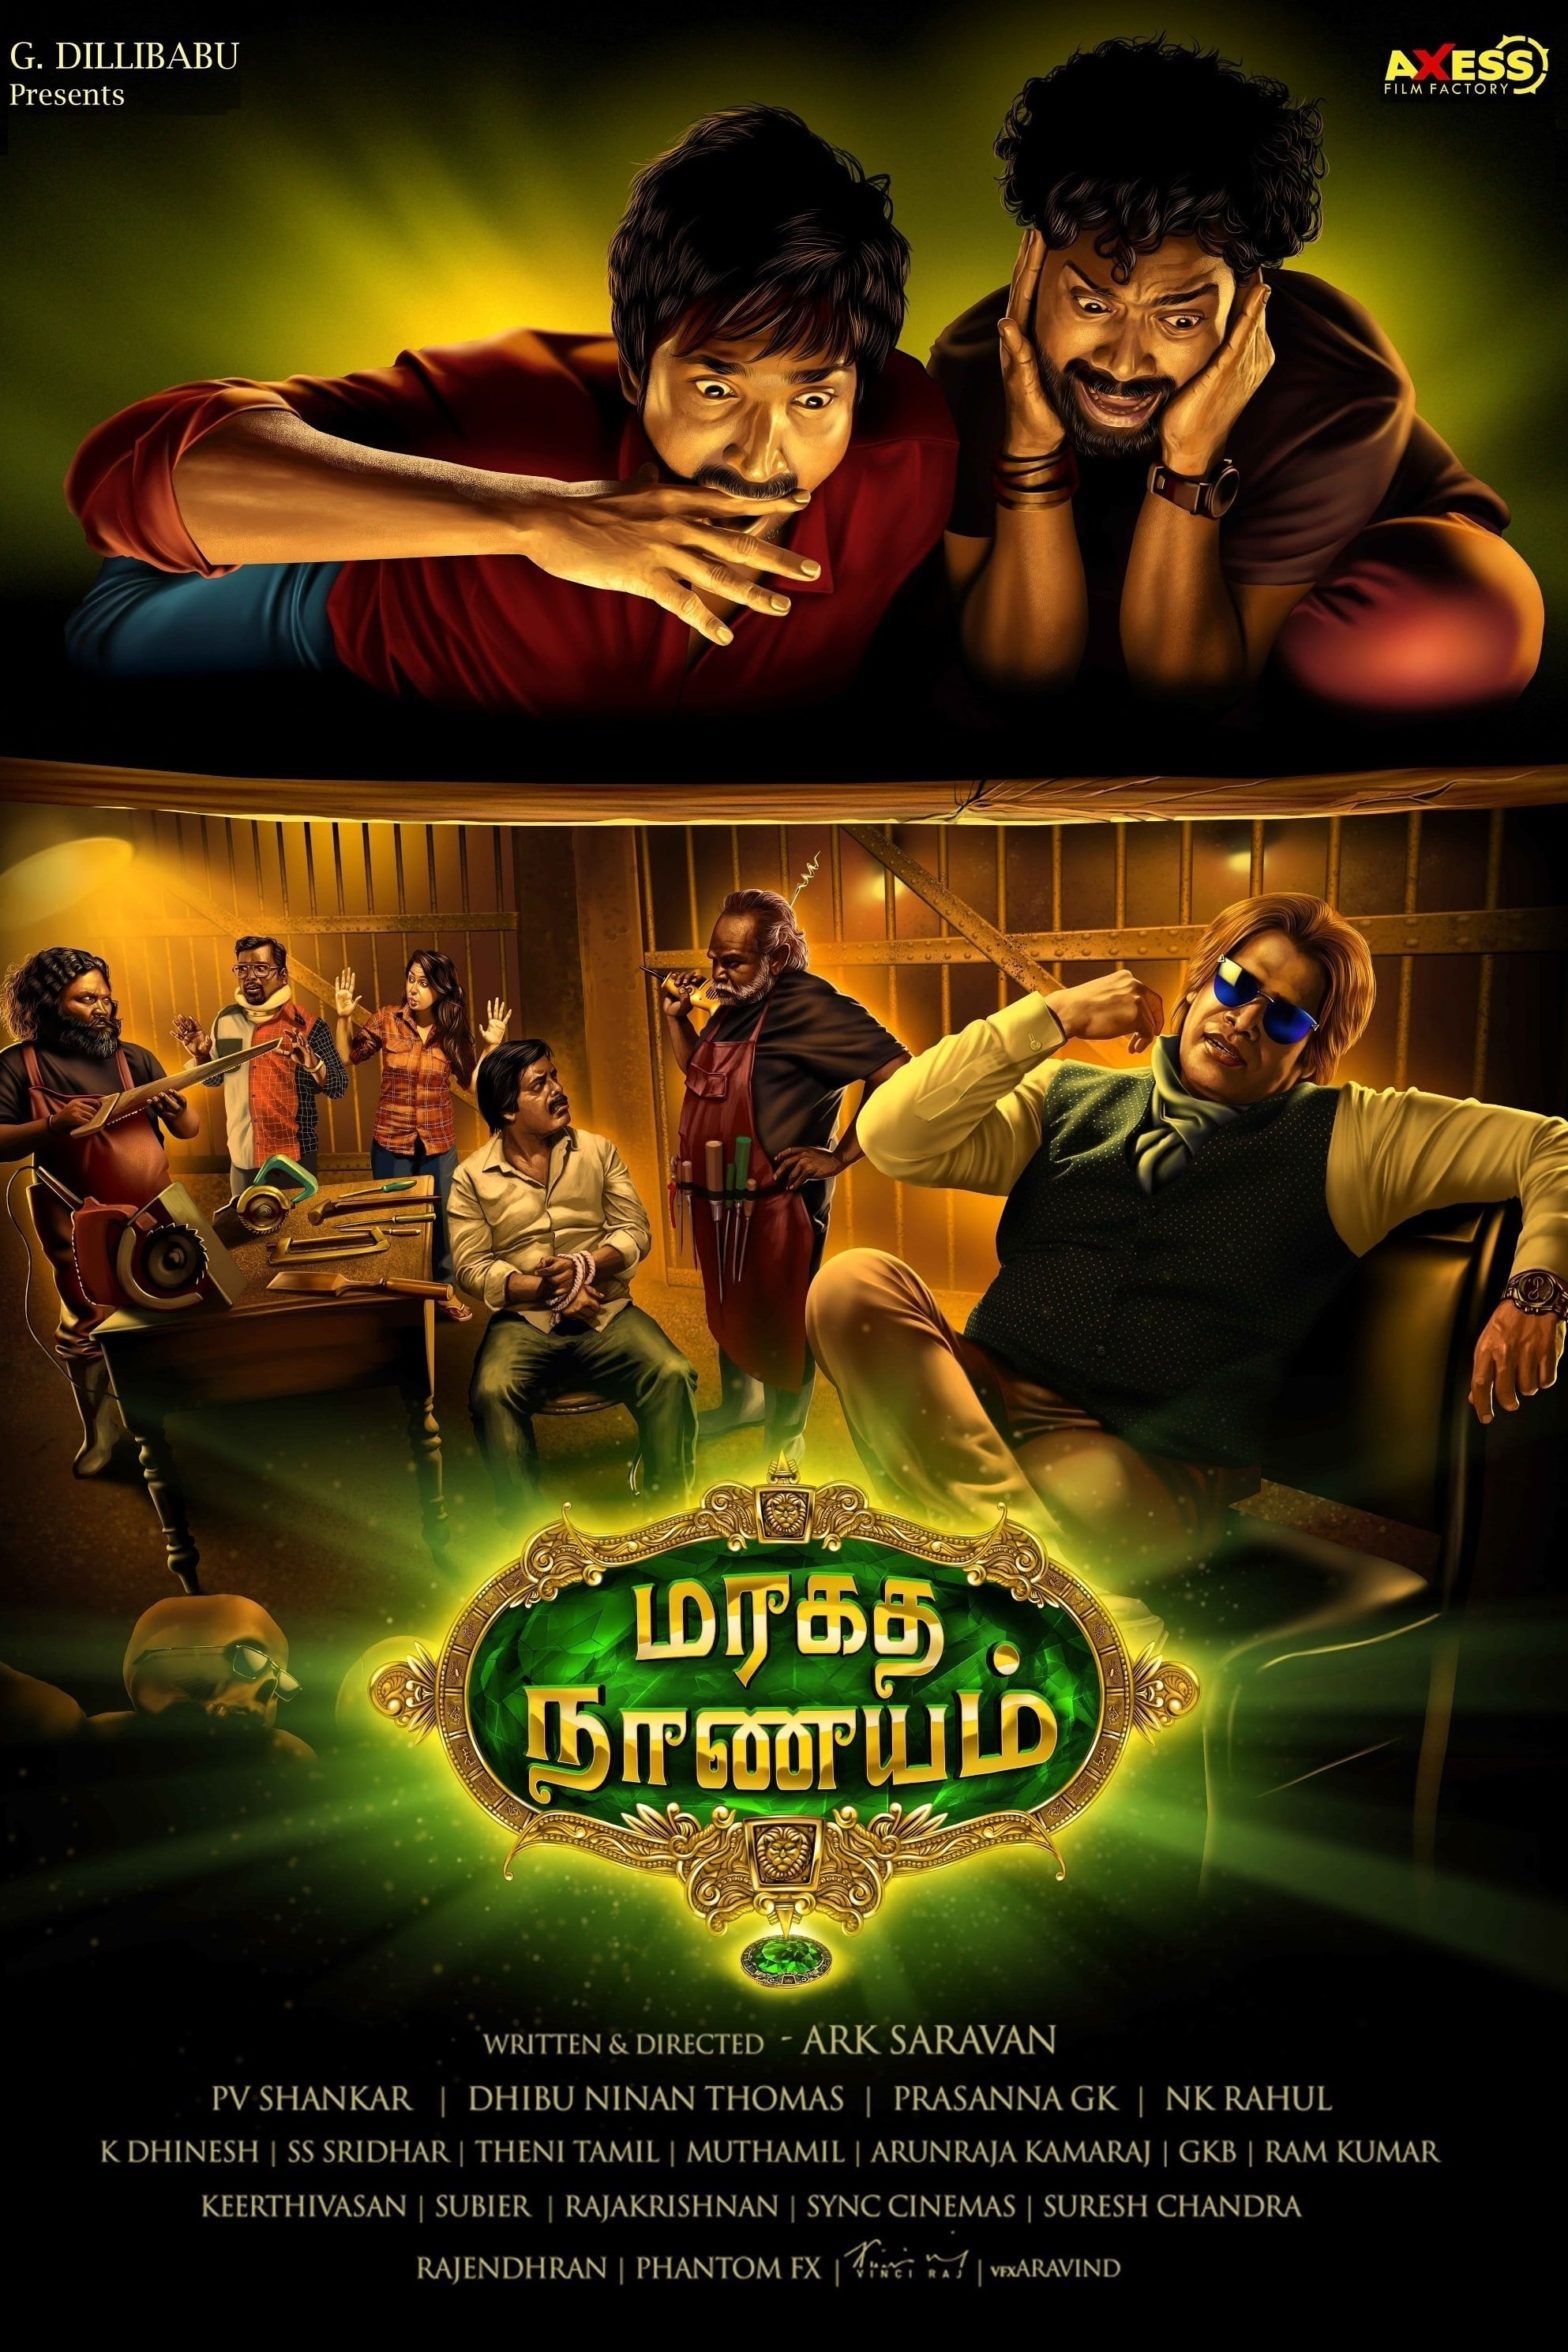 Poster for the movie "Maragadha Naanayam"